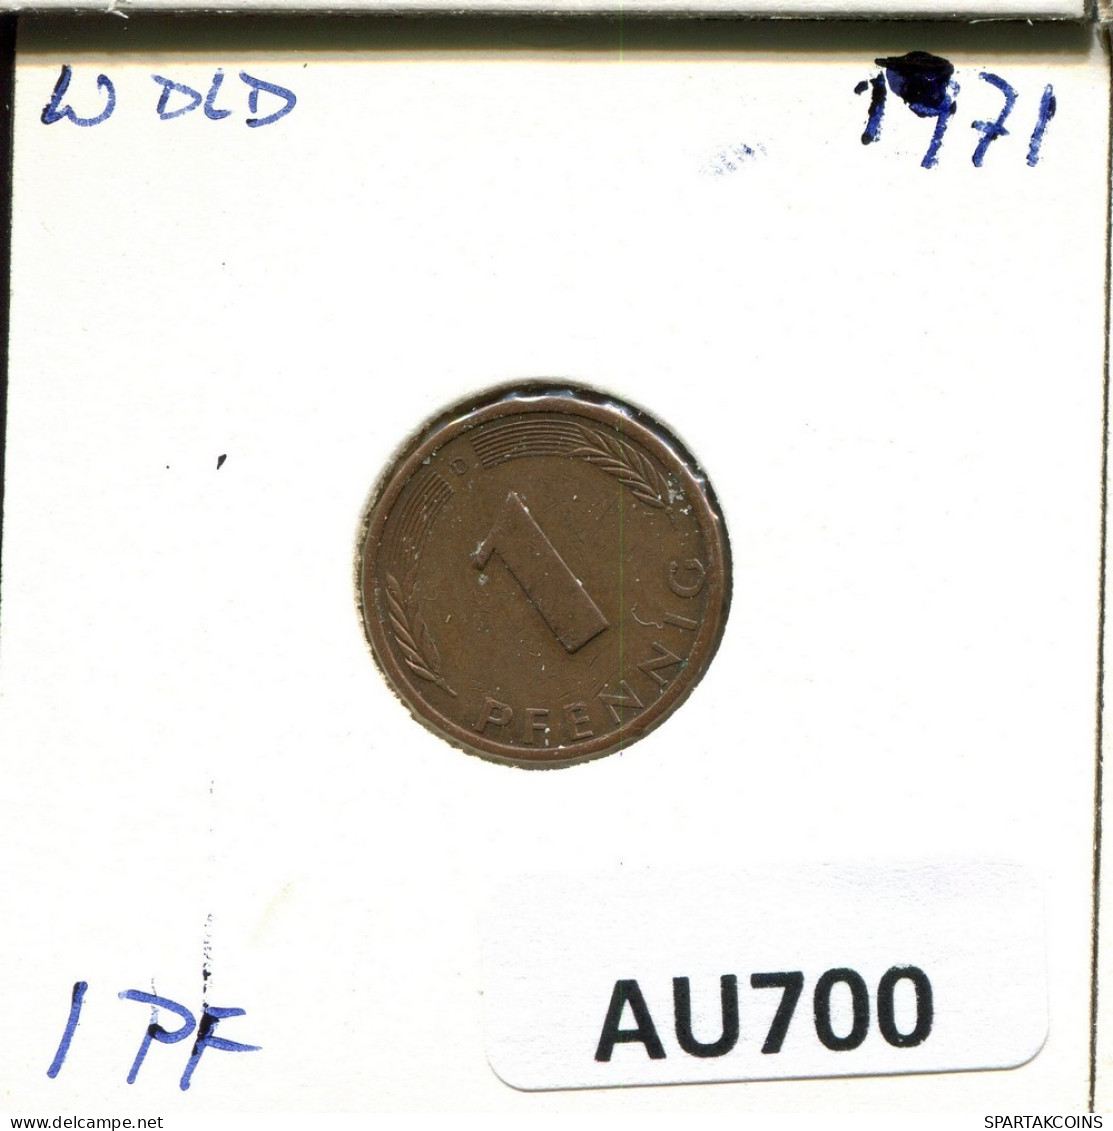 1 PFENNIG 1971 D BRD ALEMANIA Moneda GERMANY #AU700.E.A - 1 Pfennig